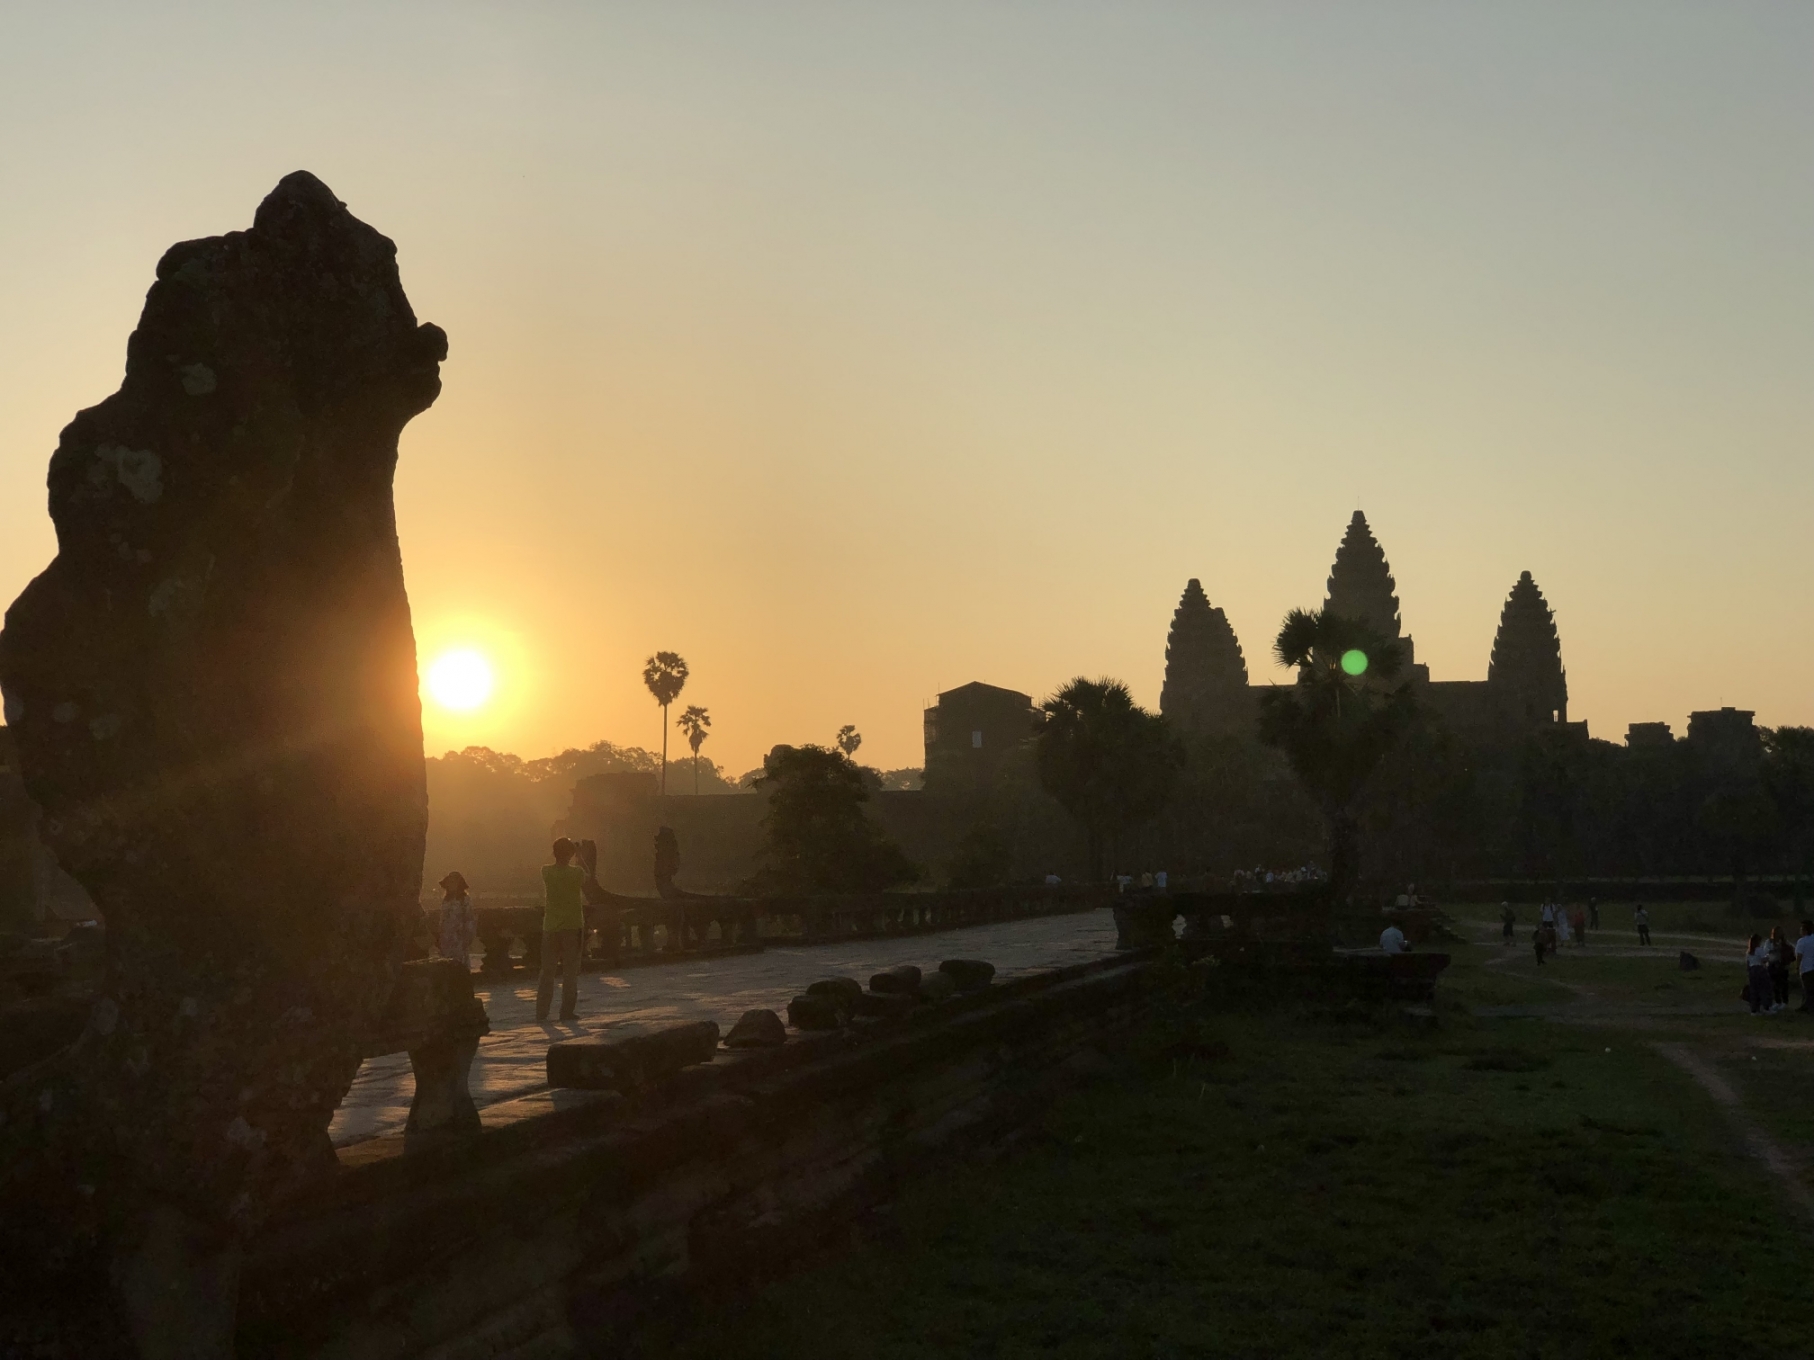 初めてのカンボジア旅行の楽しみ方 アンコールワットカンボジア旅行記 Stw